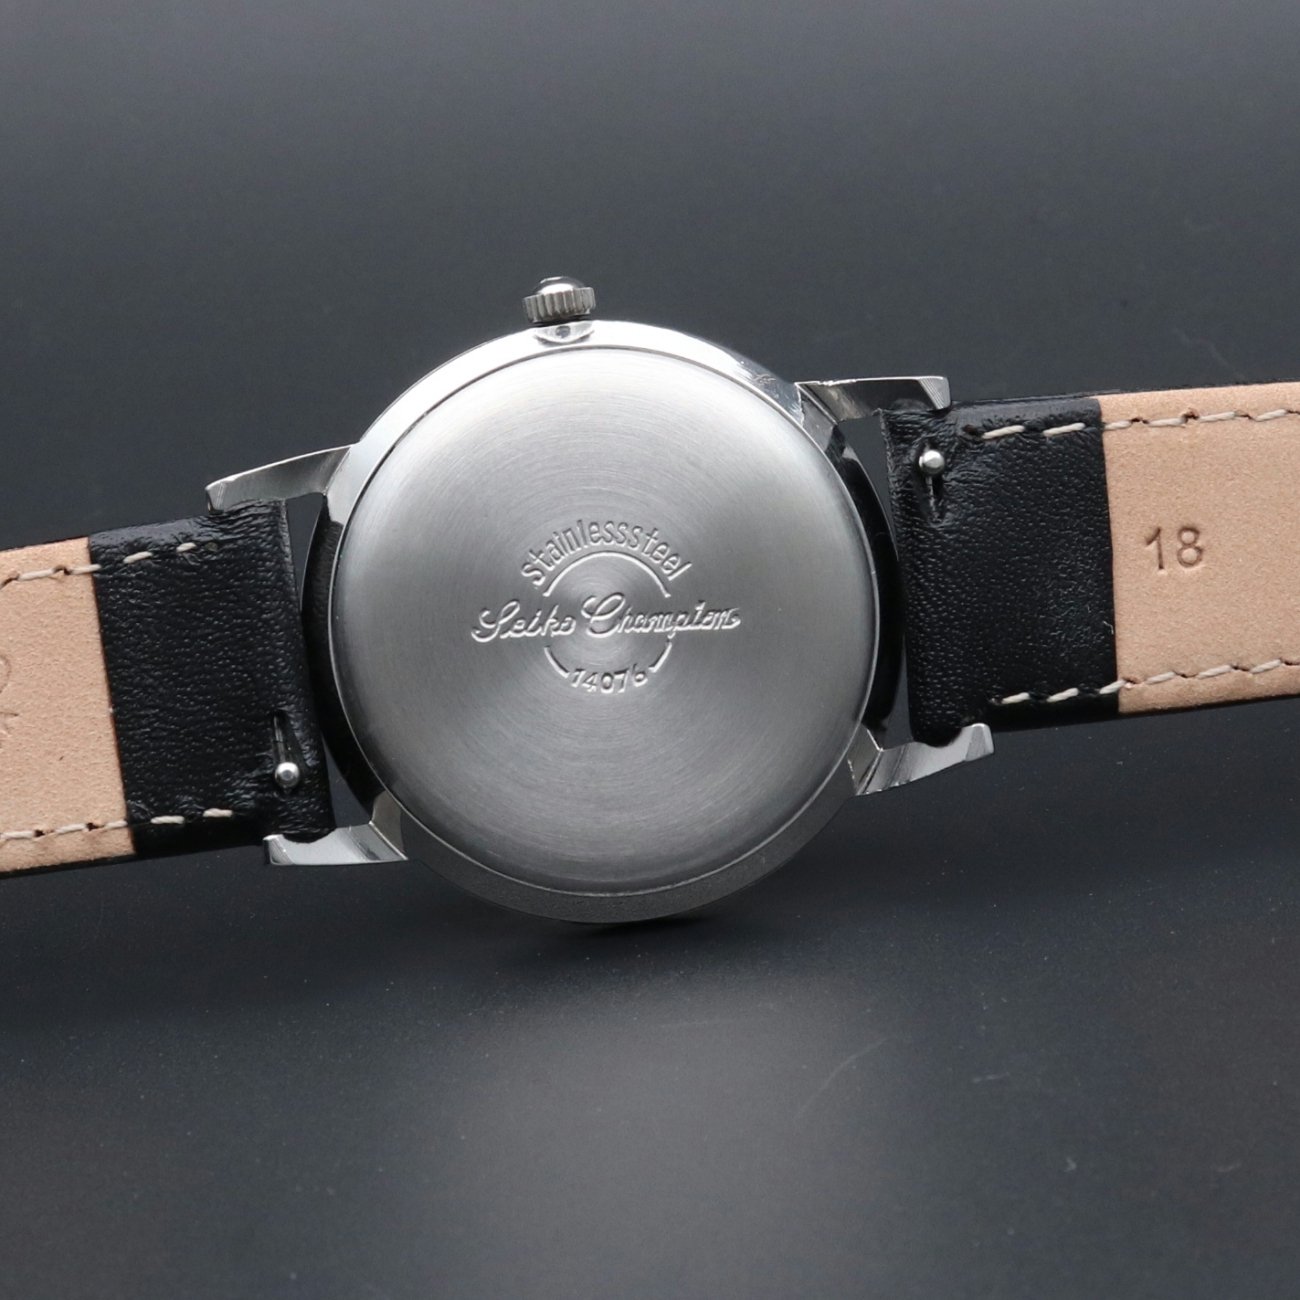 60s セイコー ファッション 17石 手巻 腕時計 アンティーク ヴィンテージ